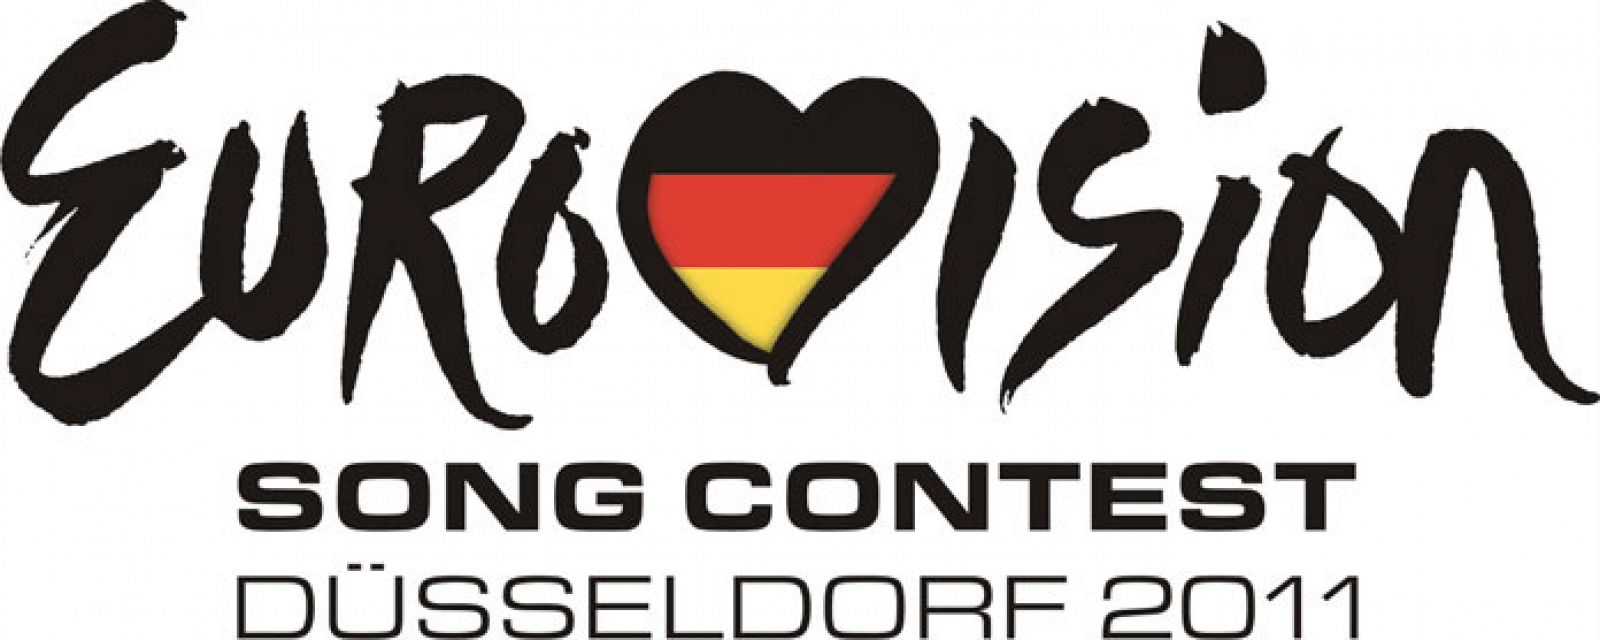 Logo de Eurovisión 2011